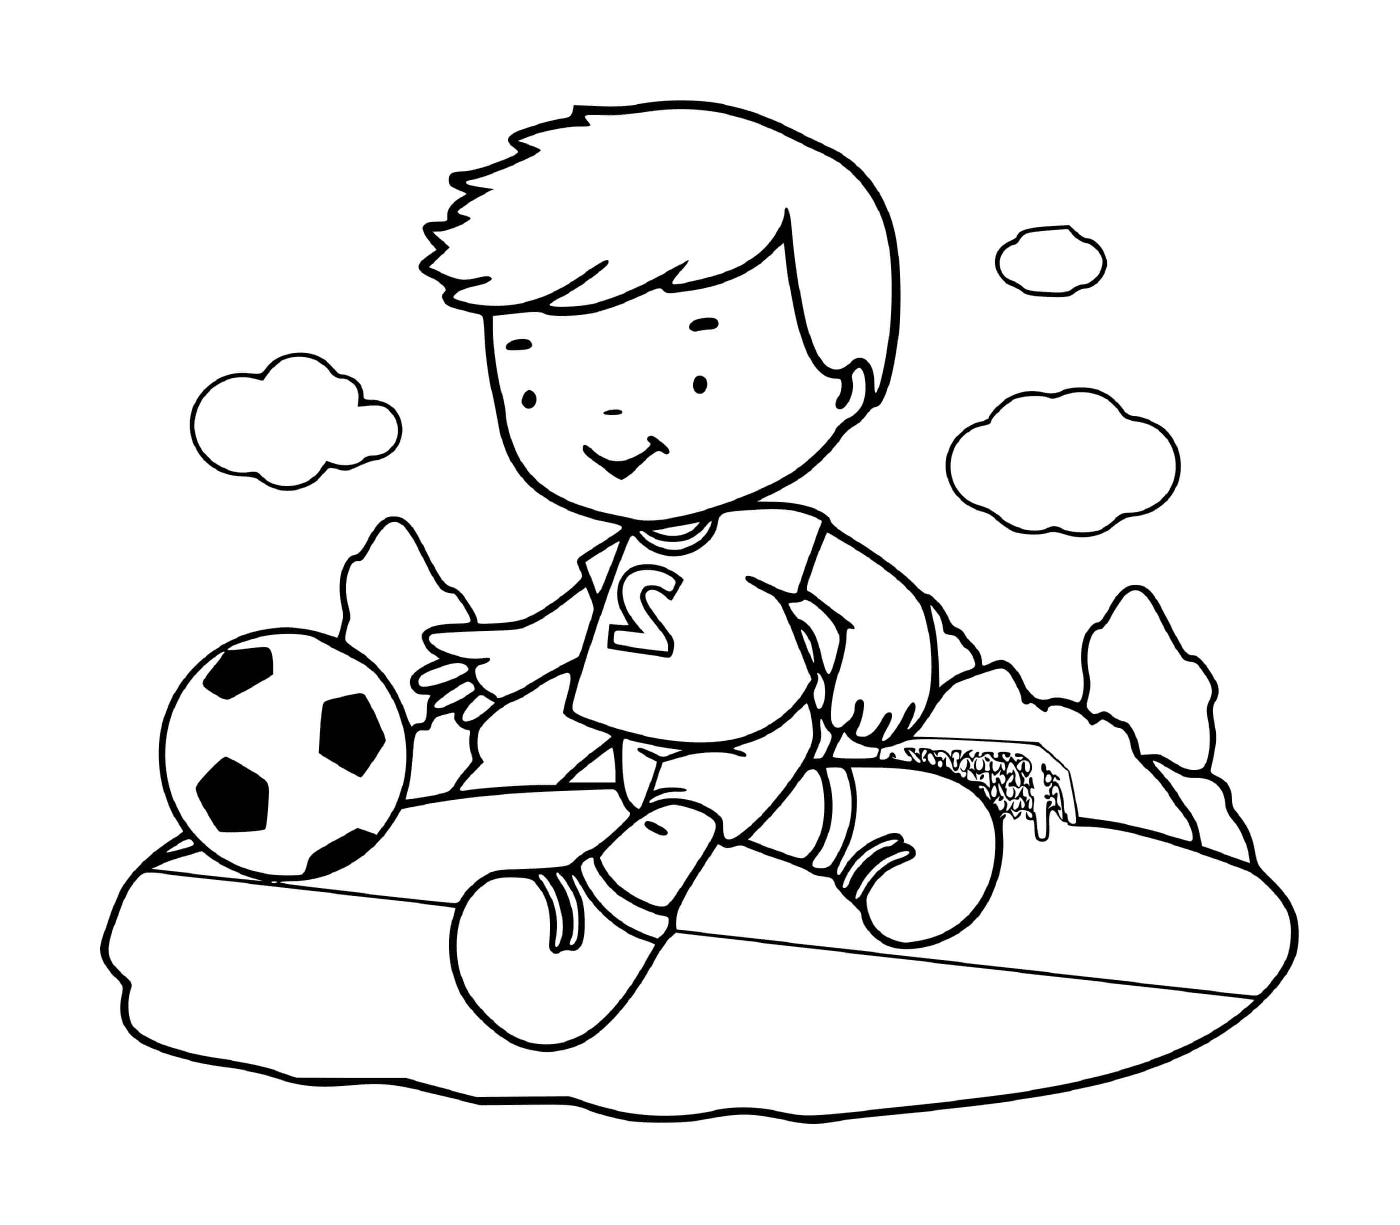  Ein Junge spielt begeistert Fußball 